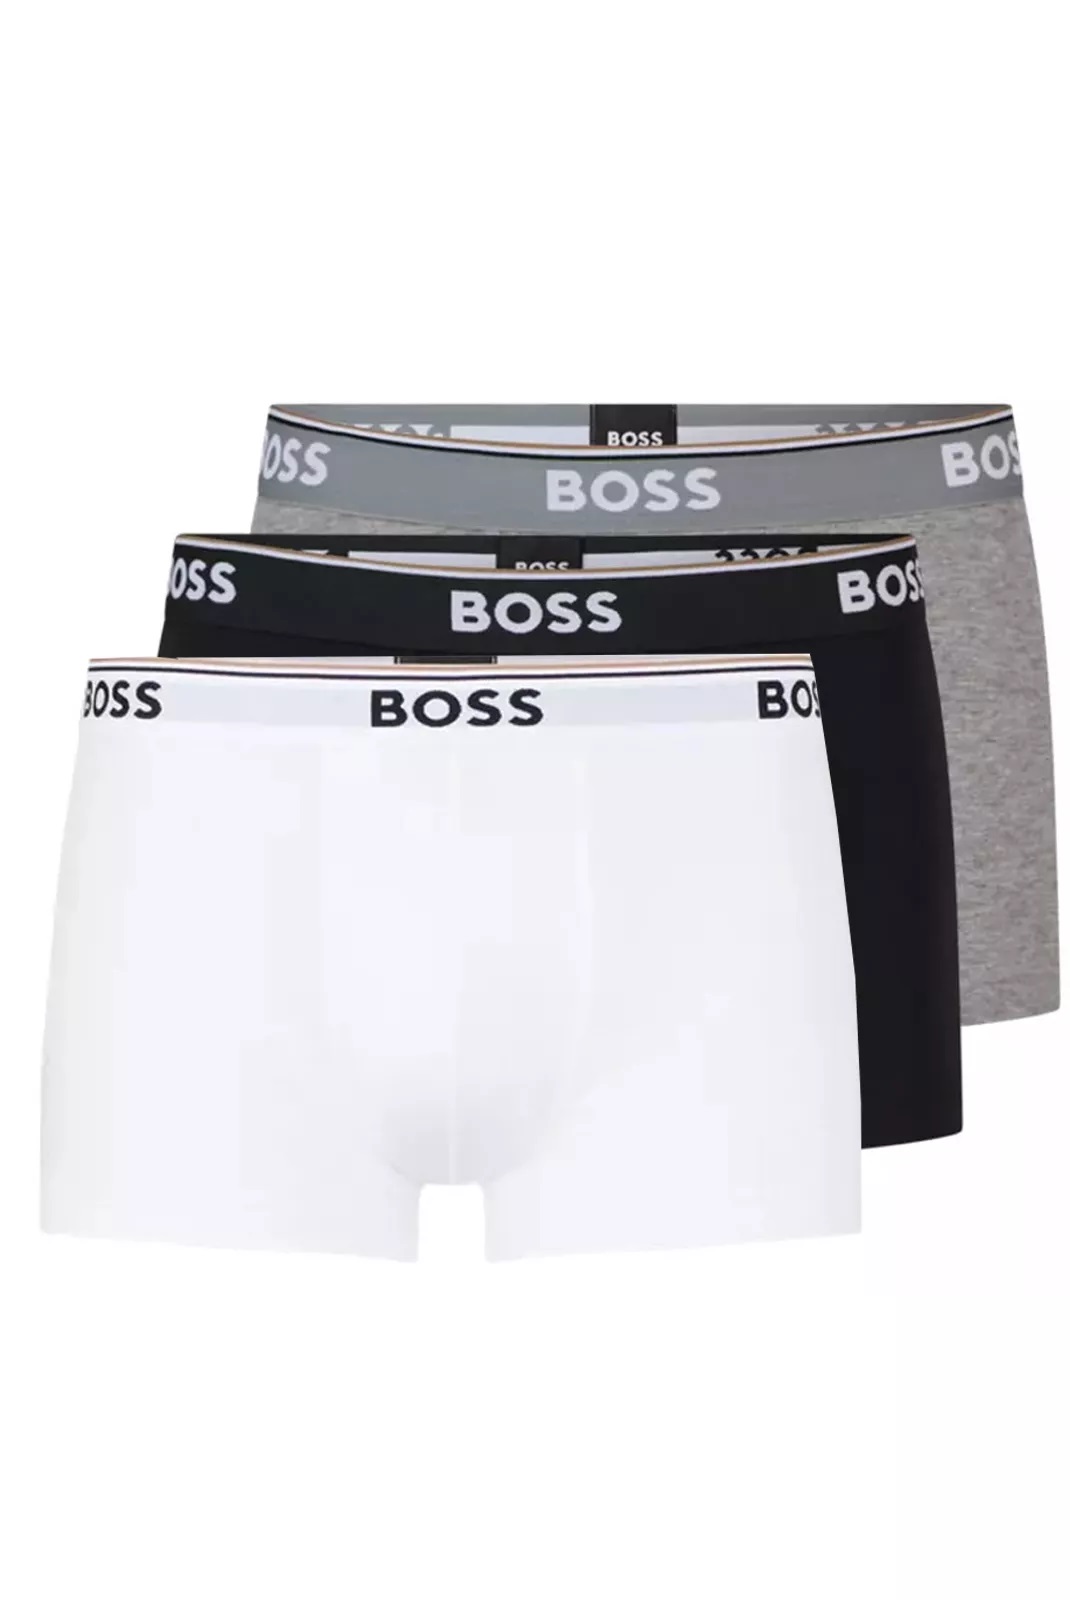 Hugo Boss pánské boxerky 3pack černé, šedé, bílé Velikost: XL